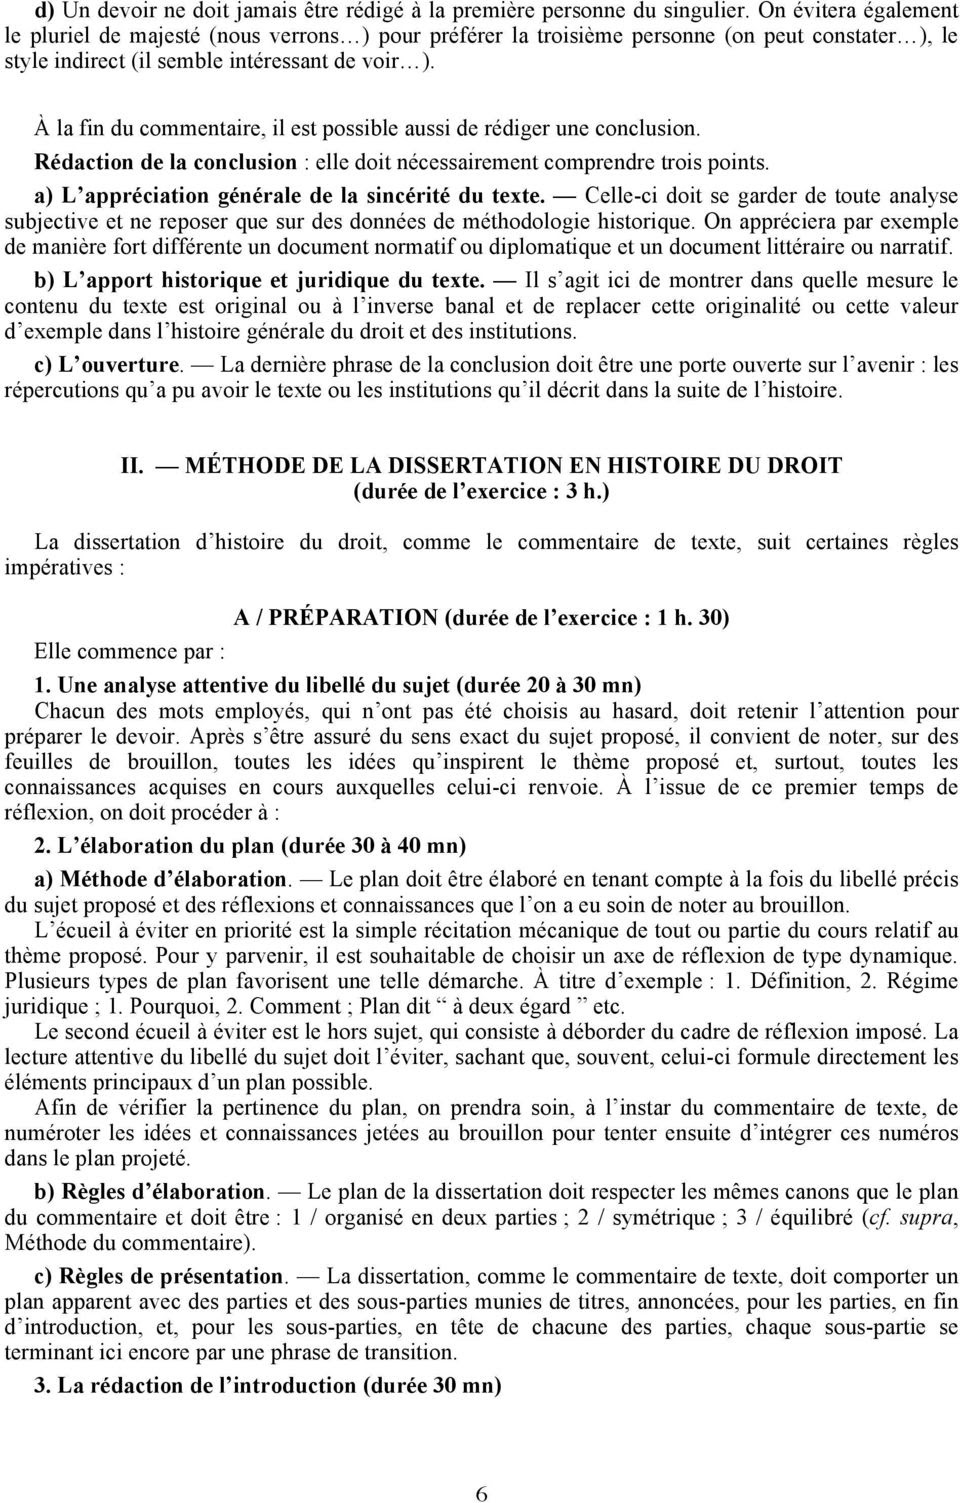 Commentaire De Texte Introduction Historique Au Droit ...